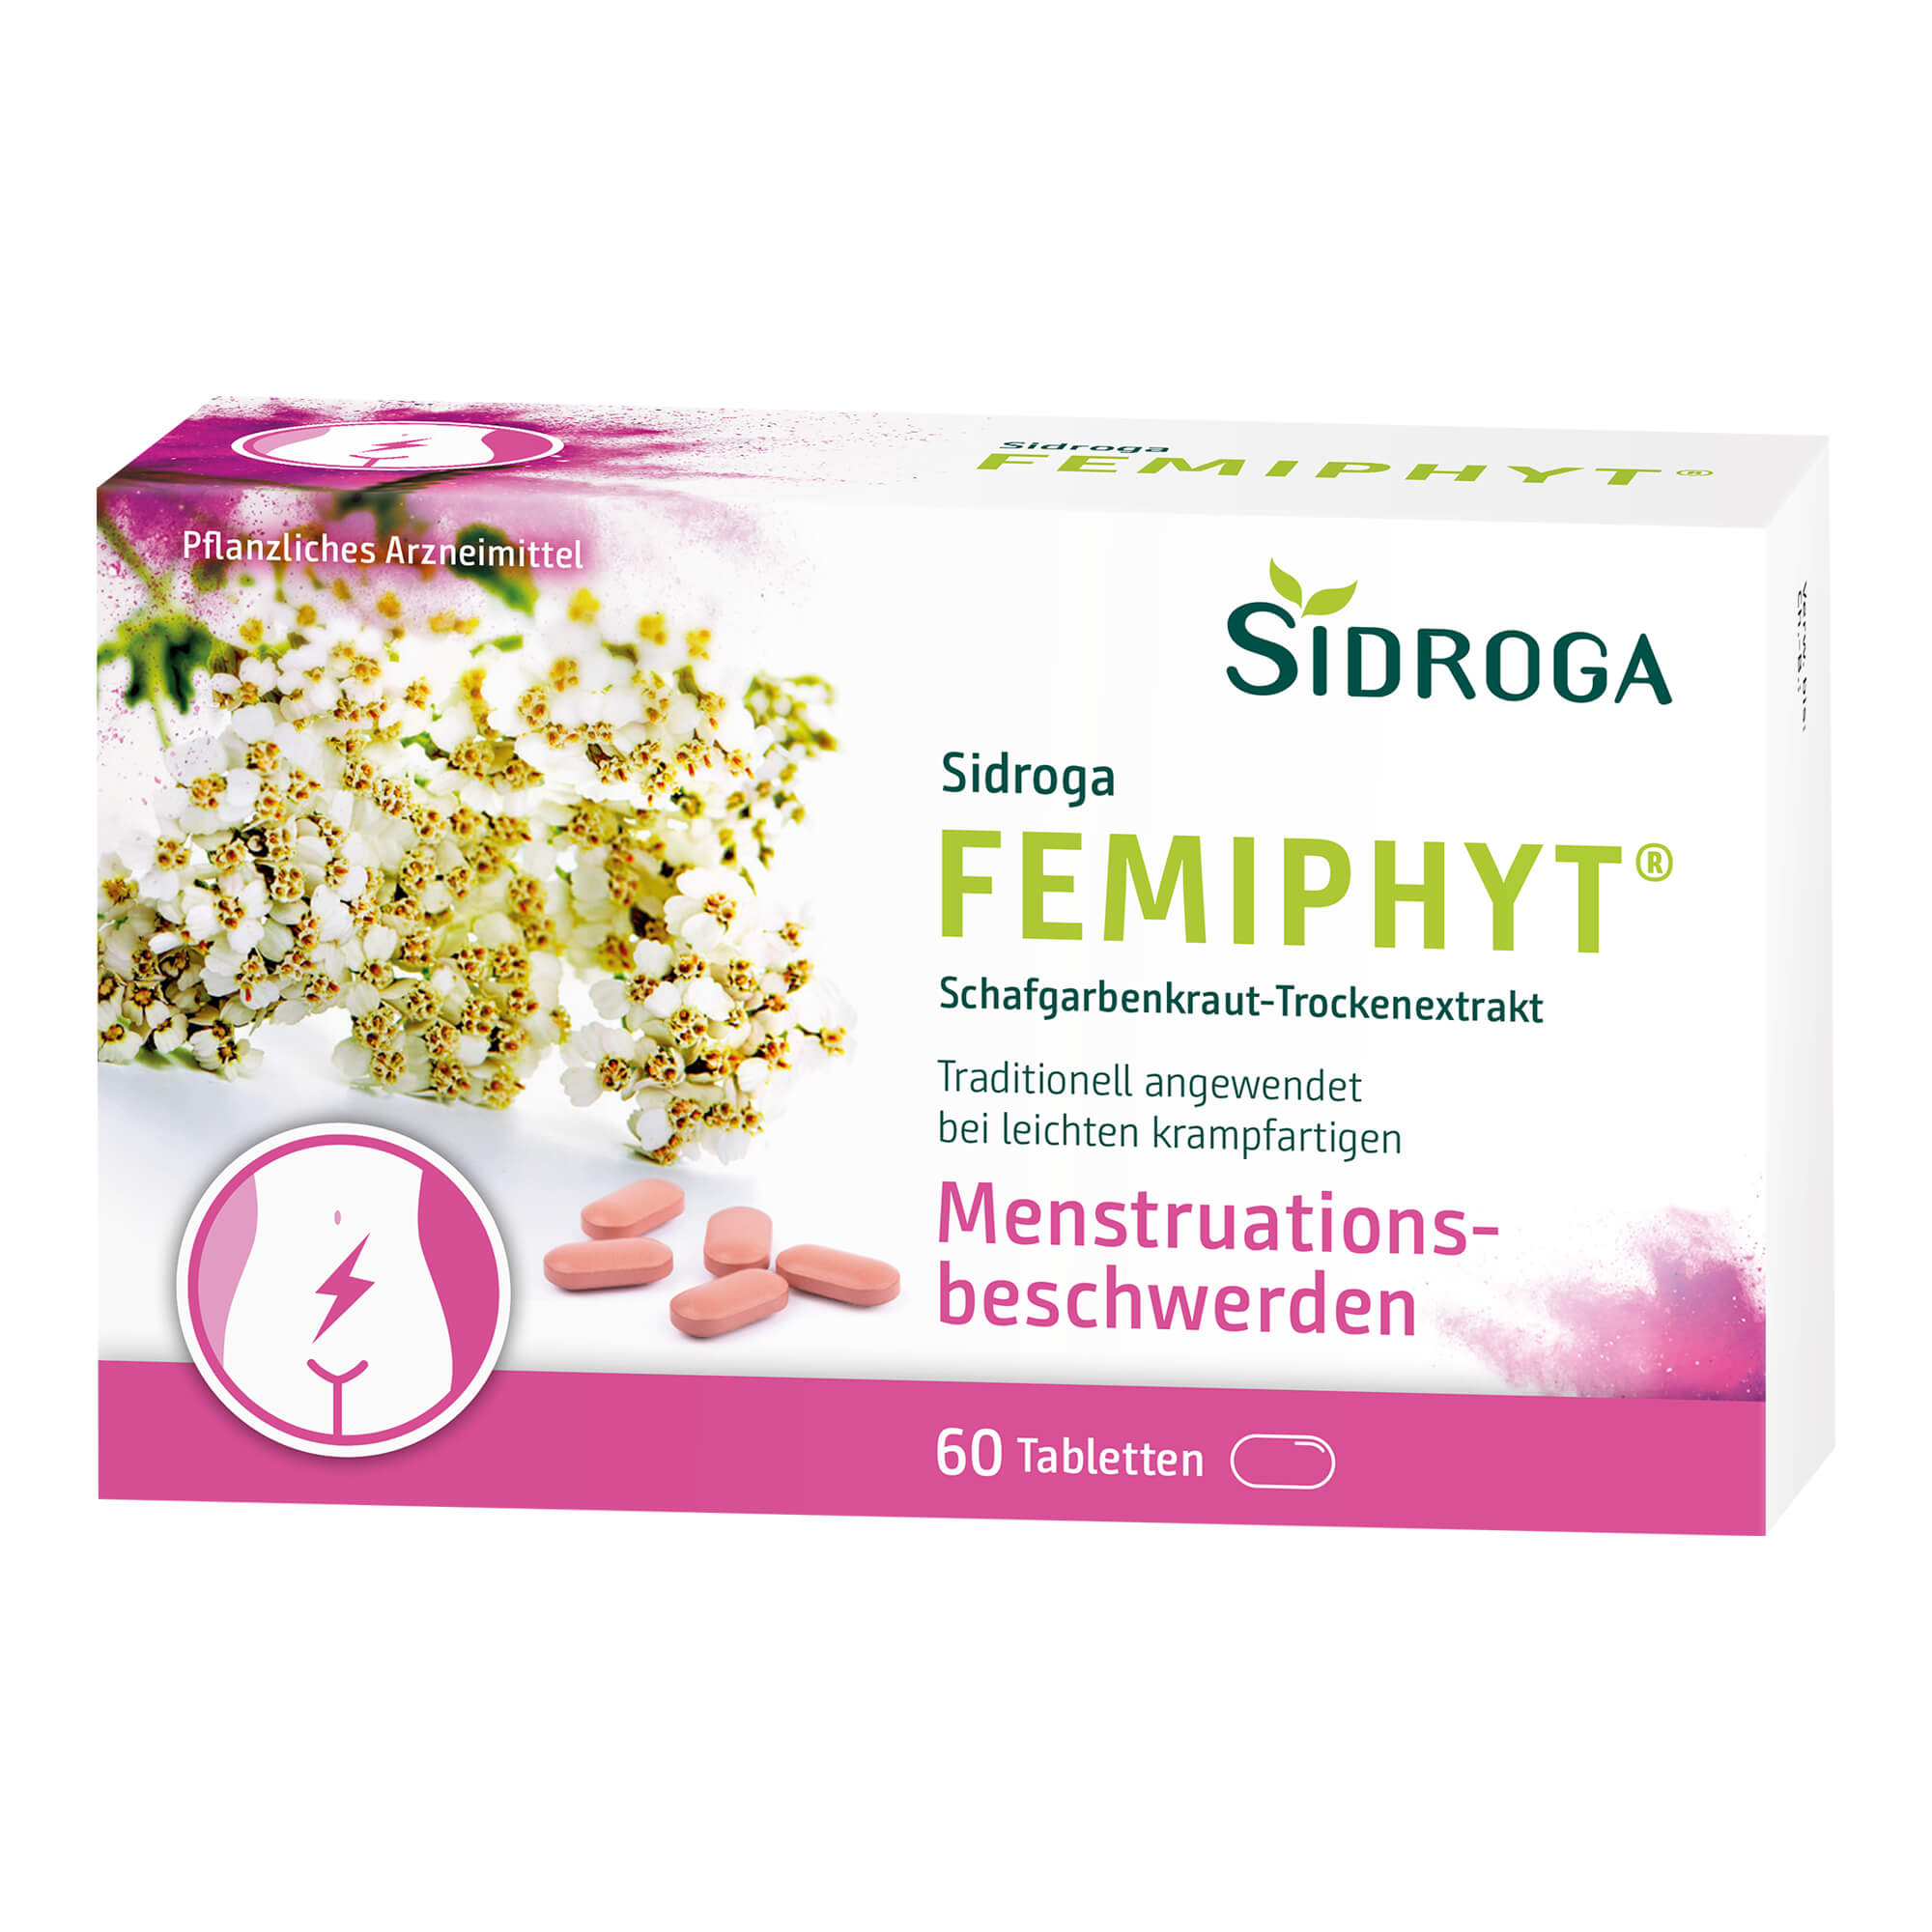 Pflanzliches Arzneimittel bei leichten krampfartigen Menstruationsbeschwerden.